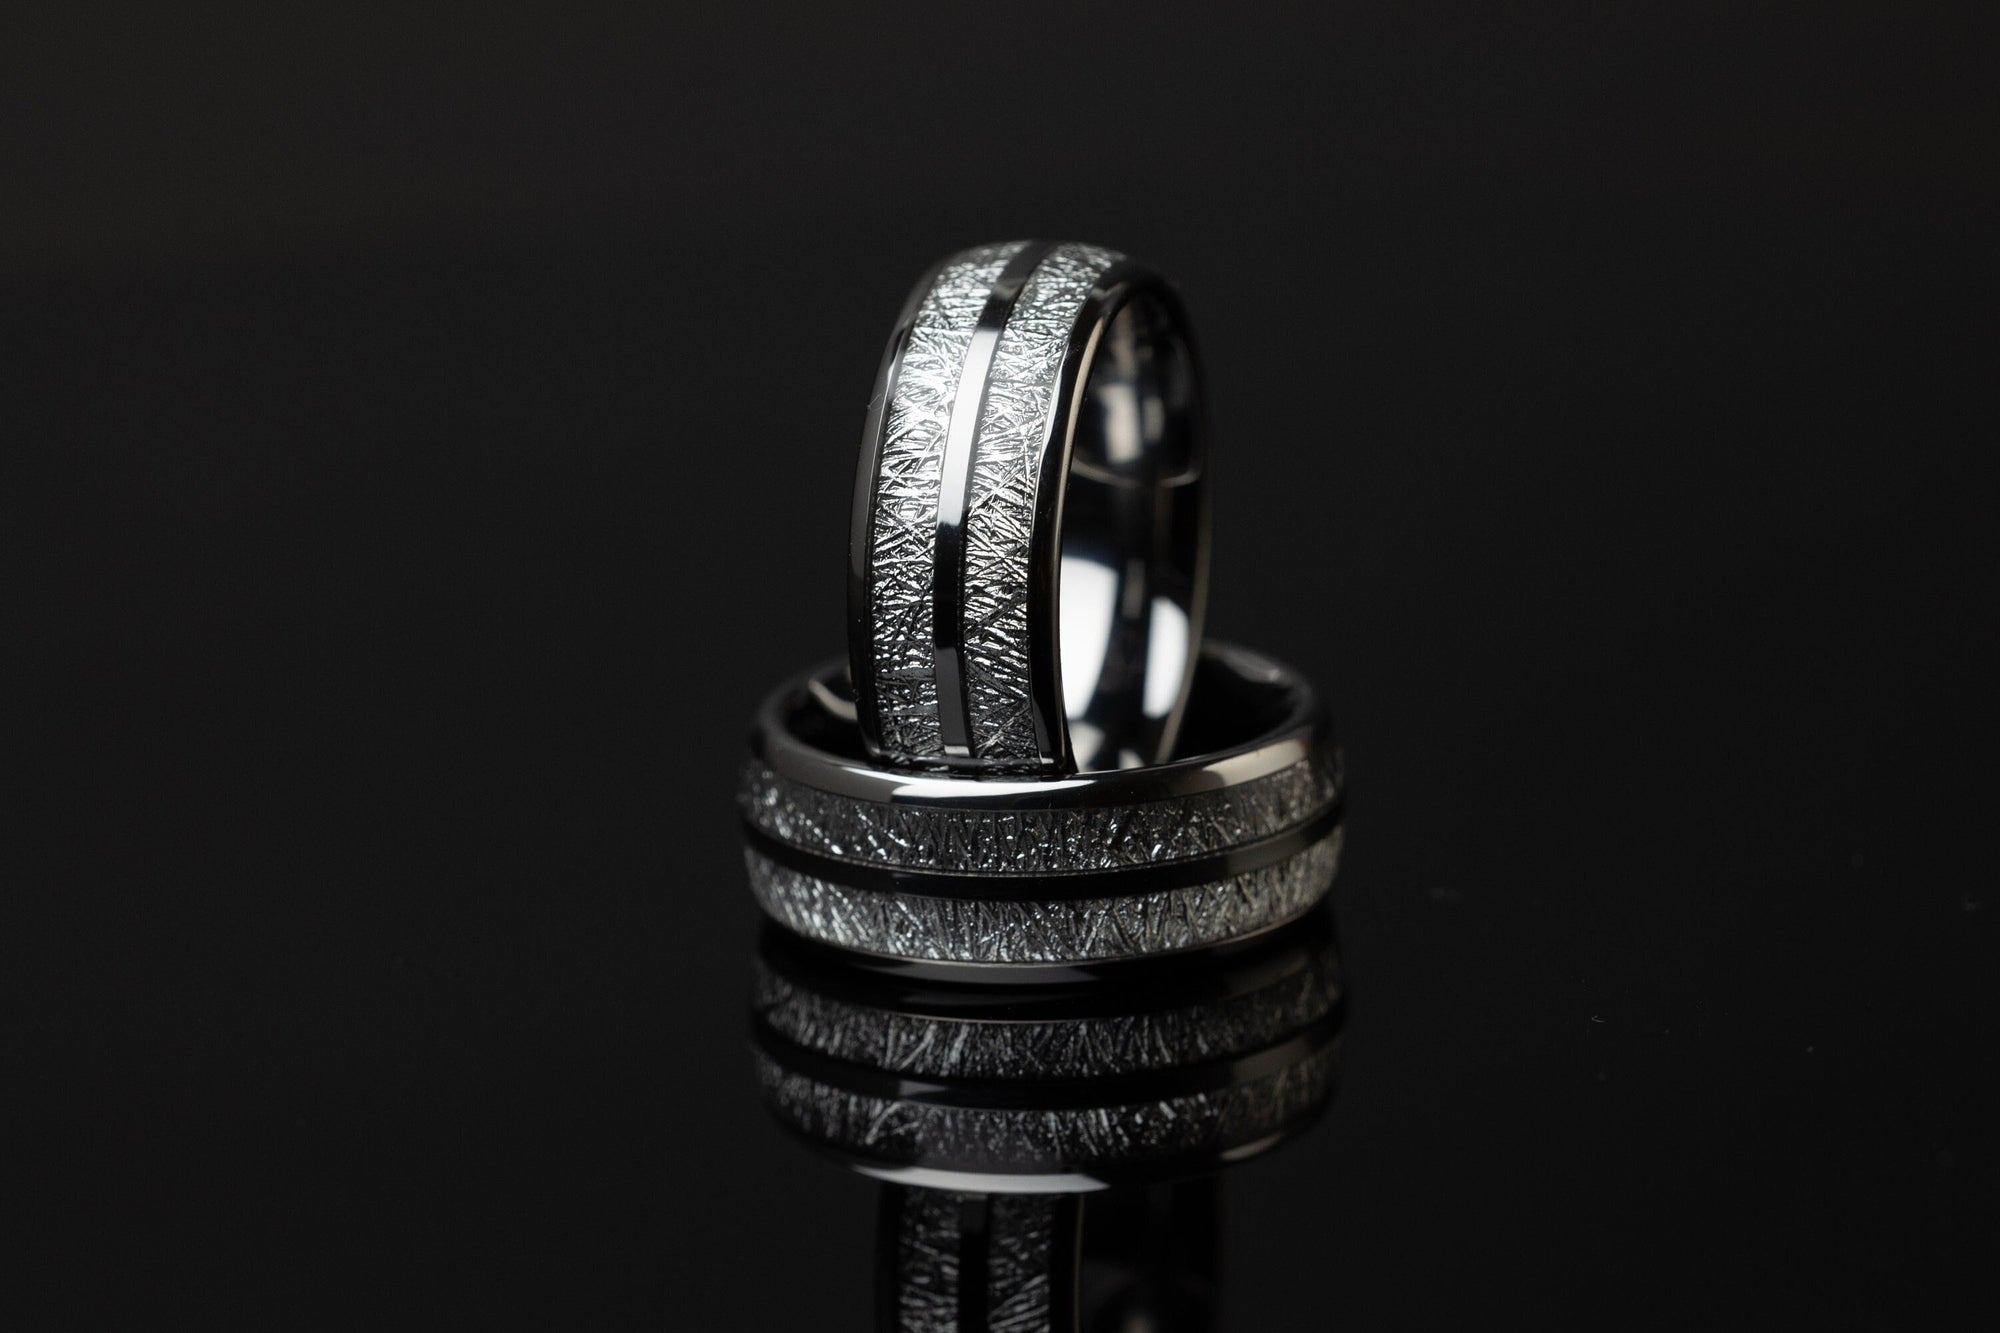 Frozen Cosmos - Silver Tungsten Ring, 8mm